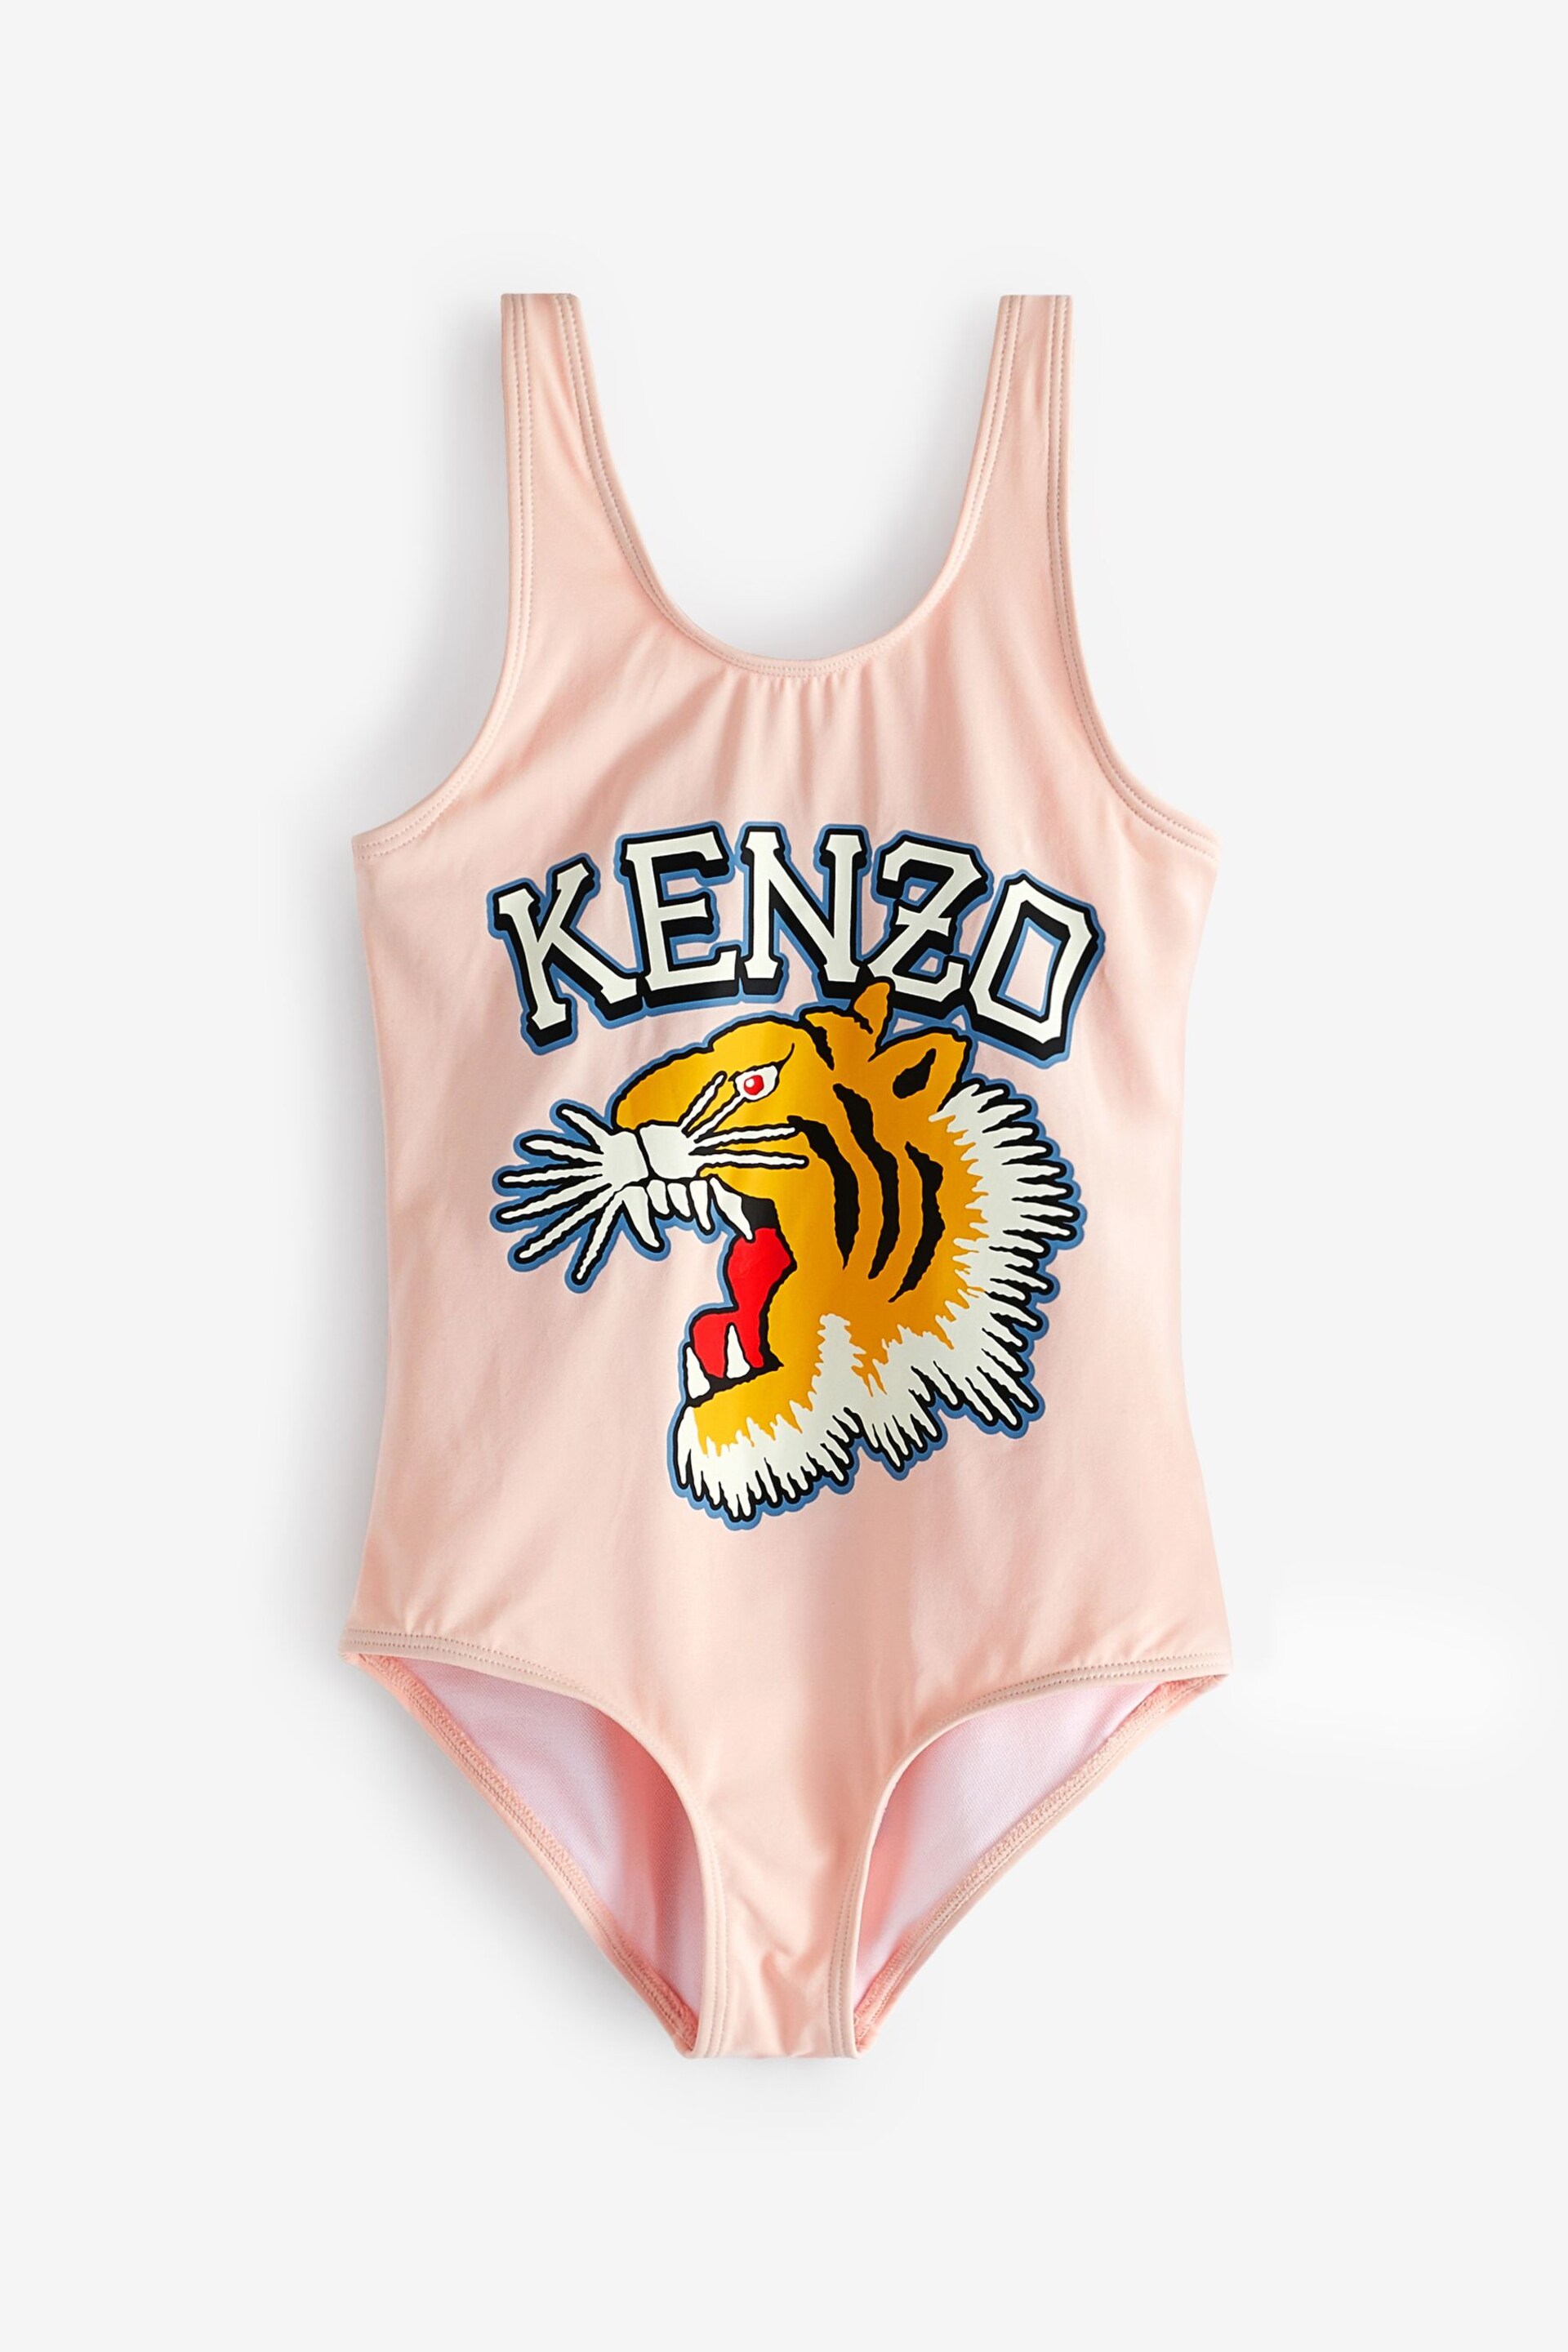 KENZO KIDS Pink Varisty Tiger Logo Swimsuit - Image 1 of 2